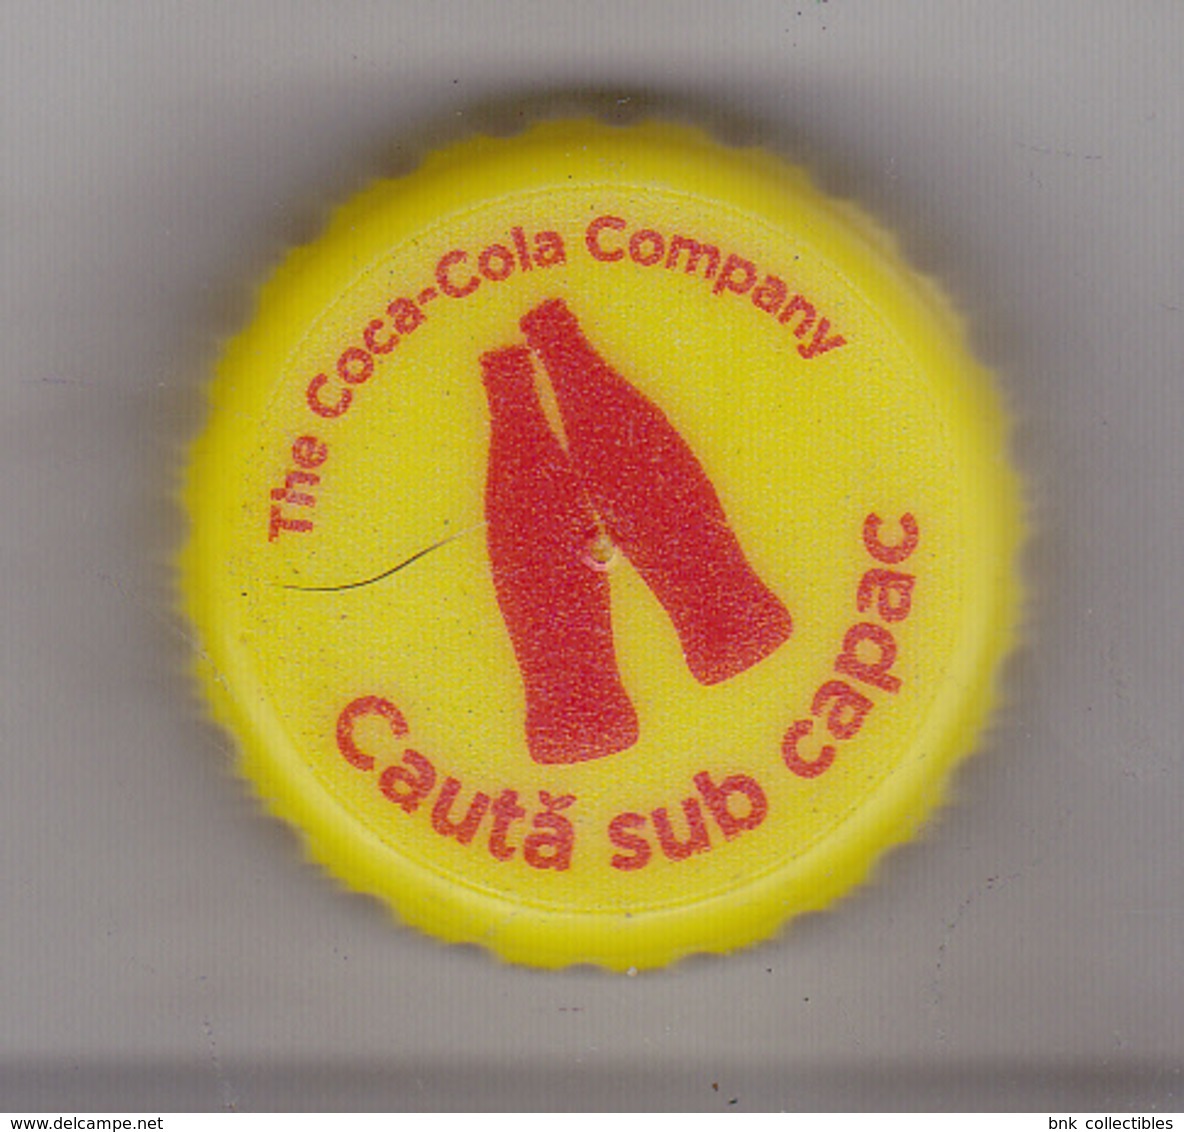 Romania Coca Cola Cap - Plastic Cap - Soda